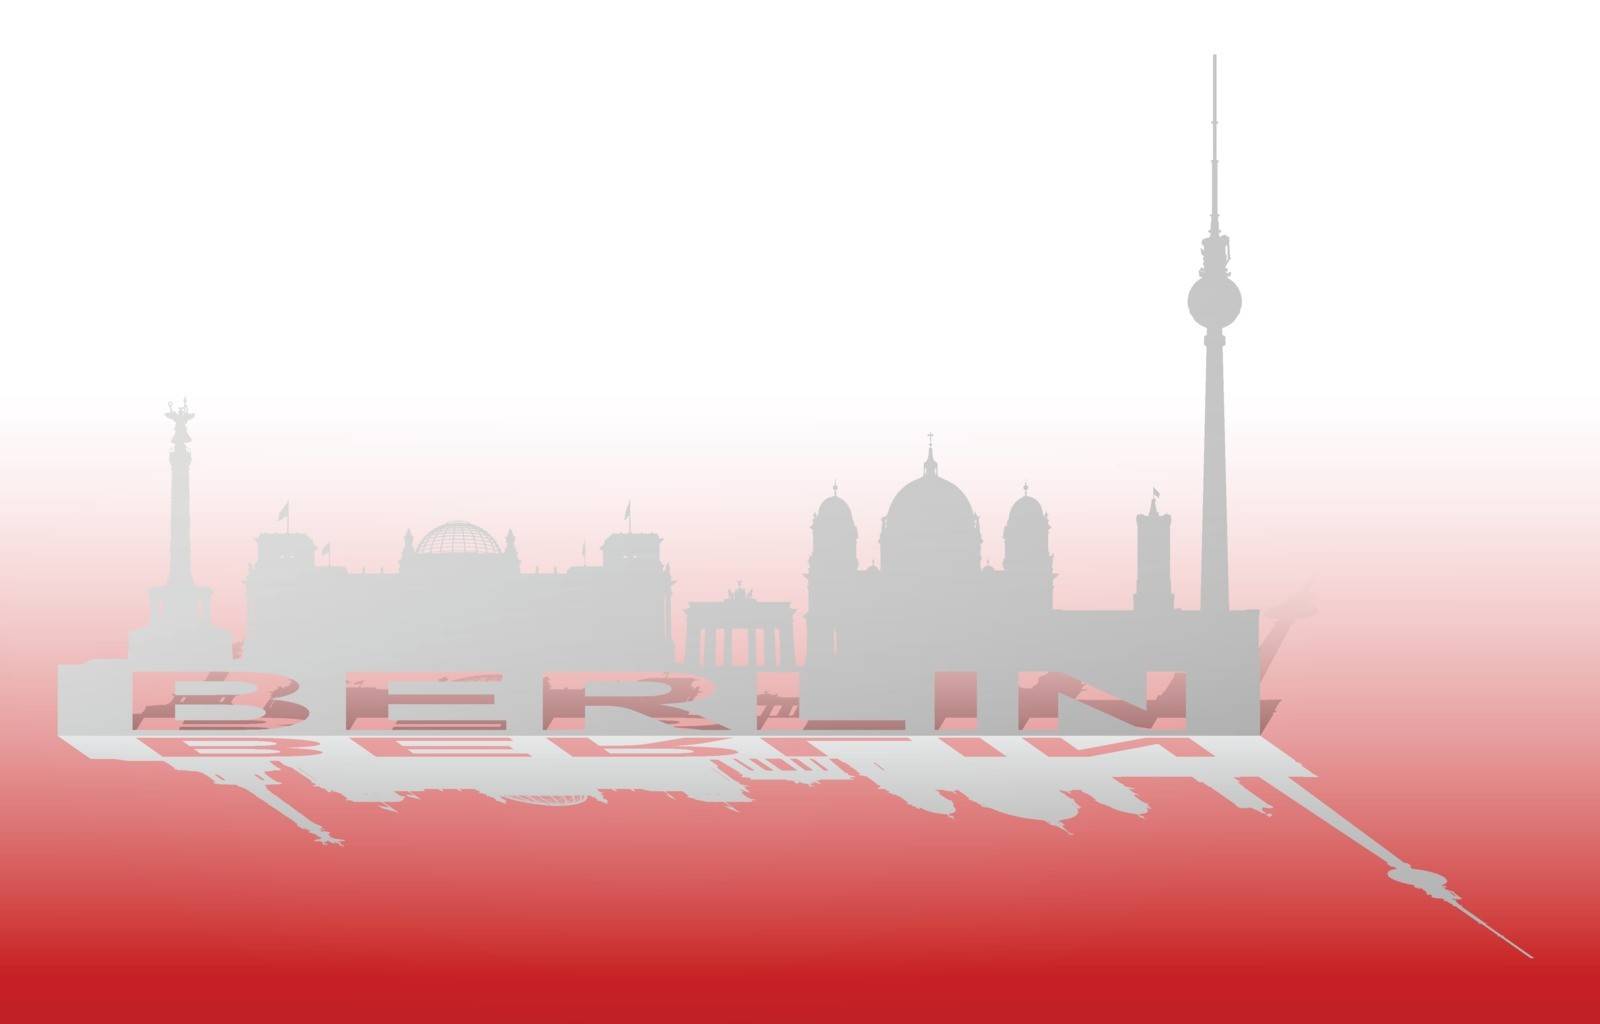 Berlin Cityscape_3 by grum_l